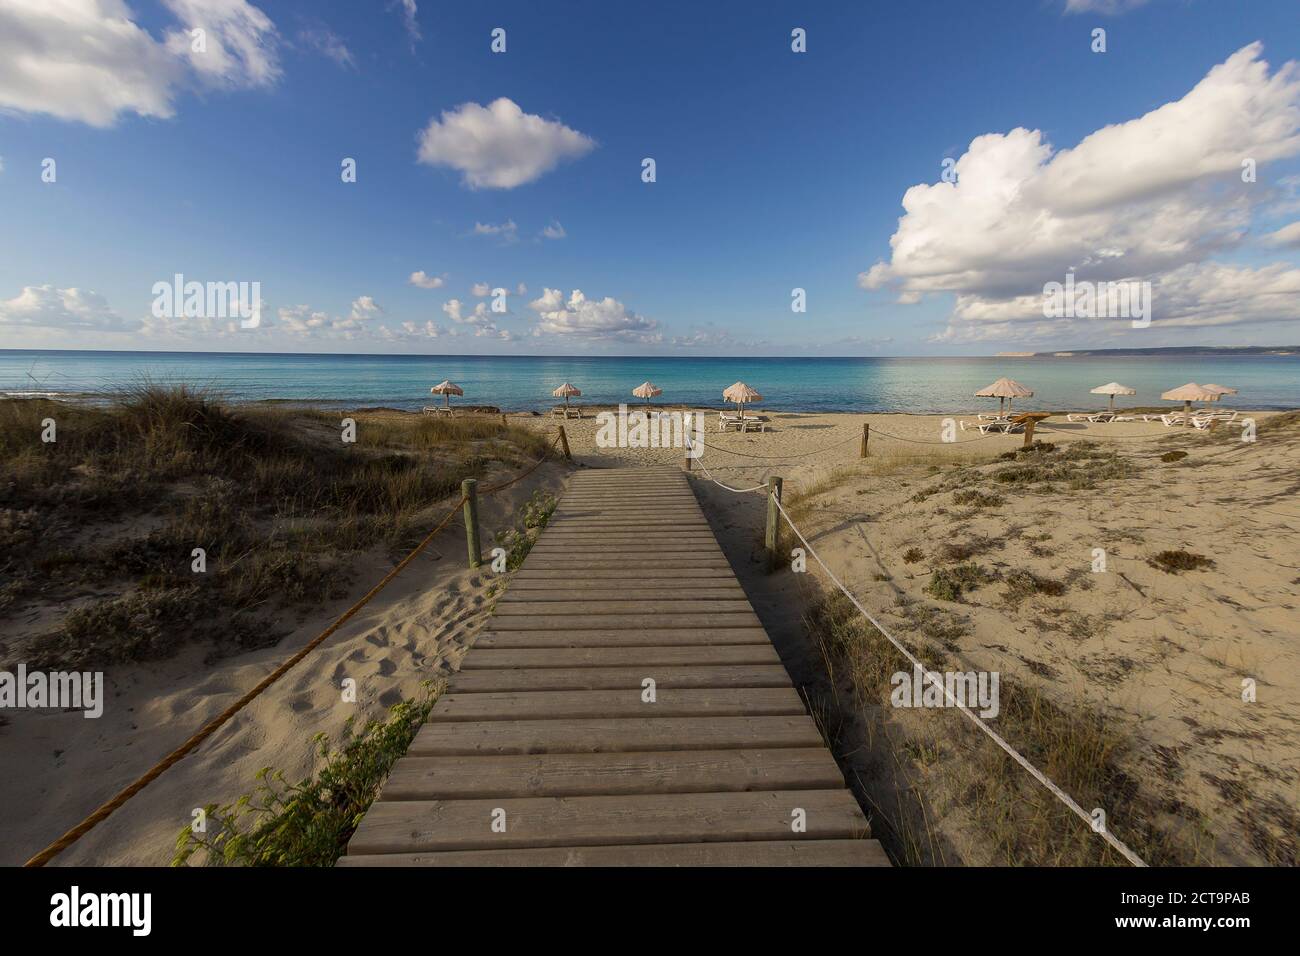 Spagna, Formentera, Es Arenals, passerella in legno in spiaggia Foto Stock